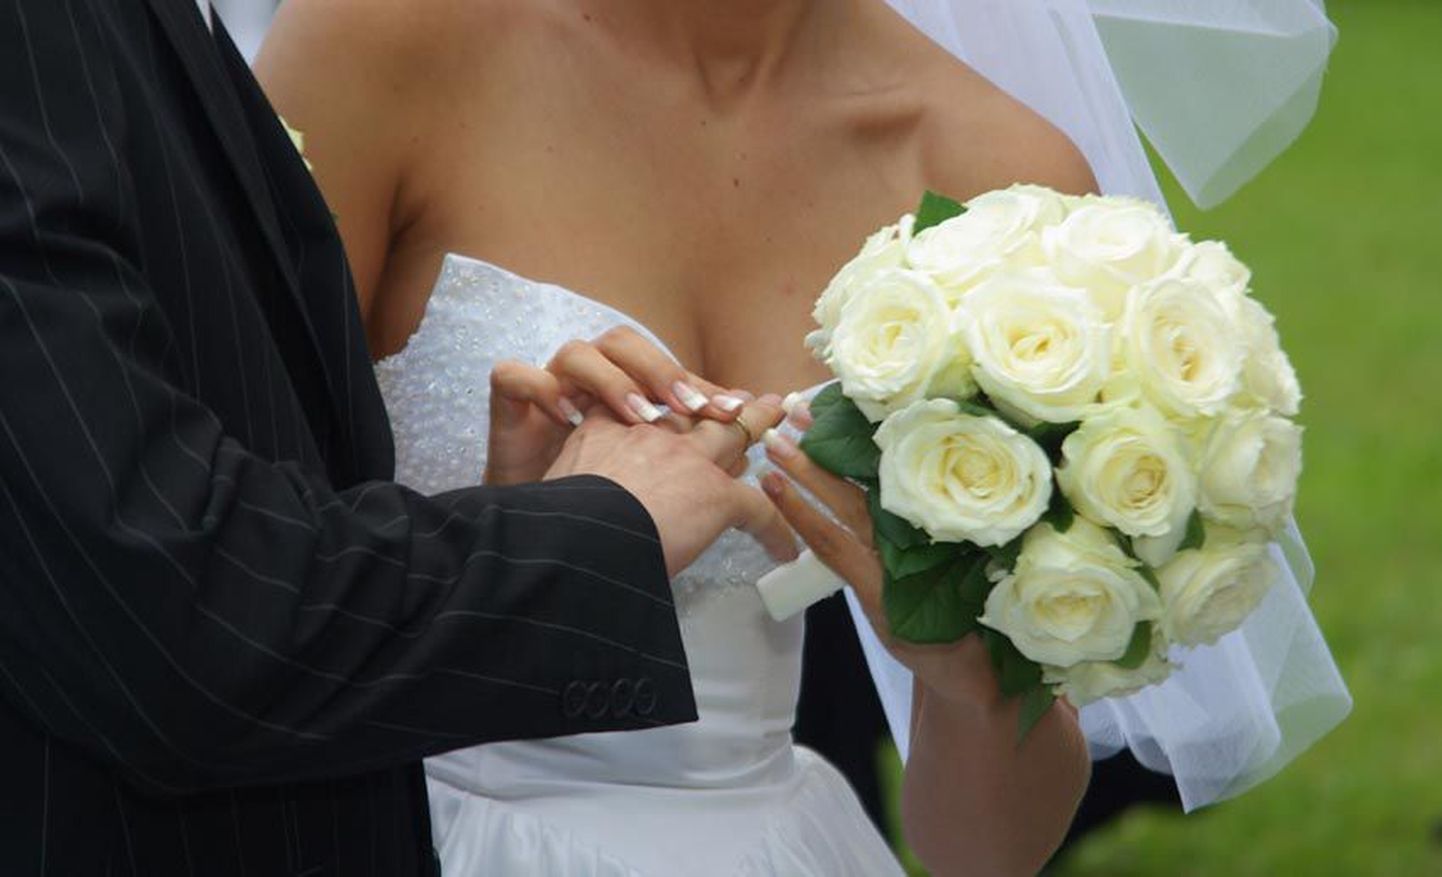 2010. aastal vahetas sõrmuseid 165 paari. Nii vähe abiellujaid ei ole viimase kolmekümne aasta jooksul olnud.